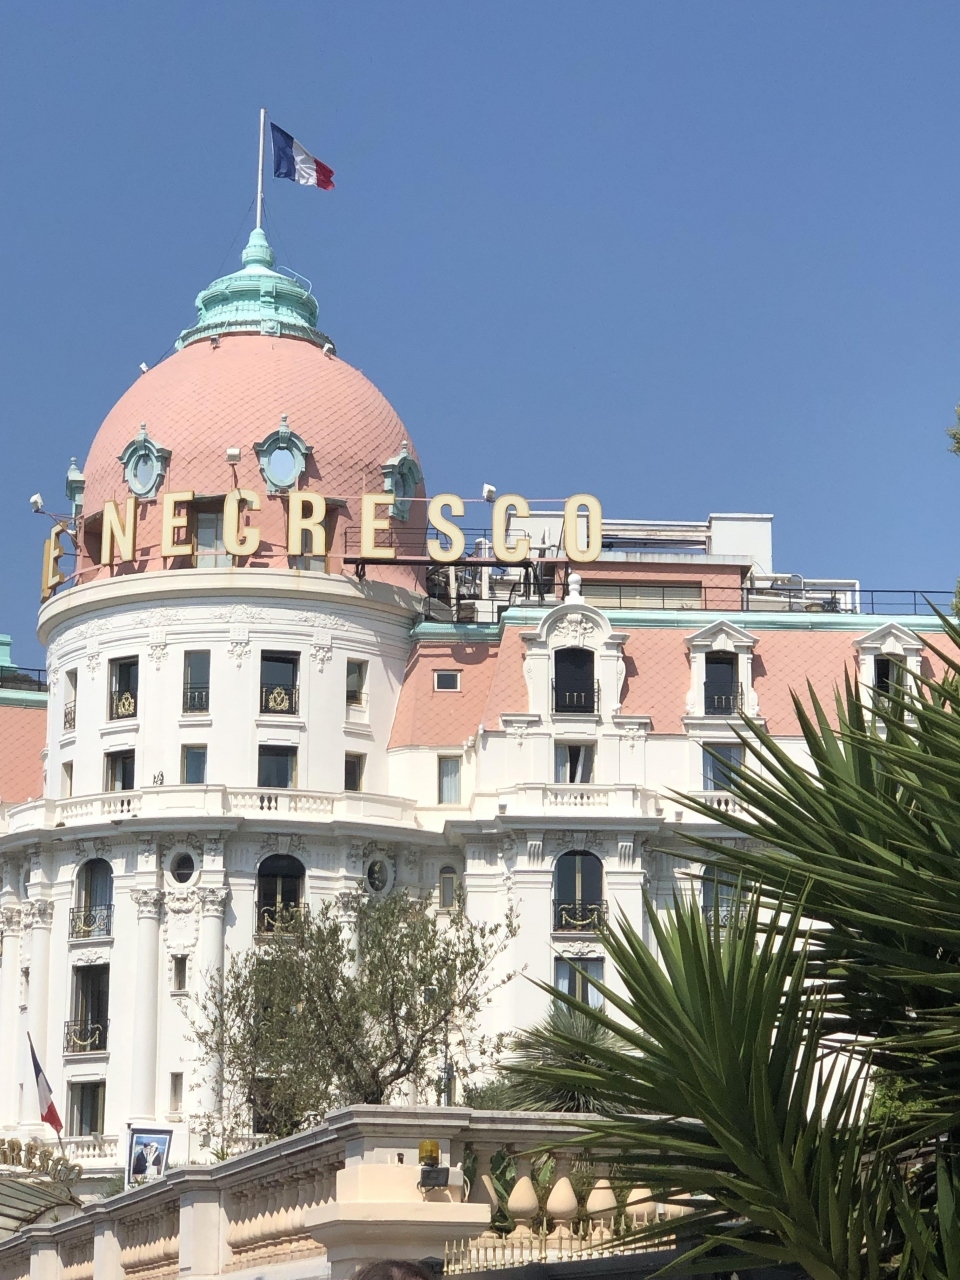 まず、最初のニースでの滞在は、泊まってみたかった、グネレスコ。

南フランスに位置する人気のリゾート地ニース。コートダジュール（紺碧海岸）と呼ばれる素敵な海岸を歩くと、一際存在感のあるホテルが見えてきます。
それがニースを代表する５つ星ホテル「ネグレスコ」。かの有名なビートルズや各国首脳も泊まったという文字通り最高級ホテルである「ネグレスコ」は、とにかく内観も外観もエレガントでゴージャス！今回の旅はここに泊まるのも一つの楽しみ